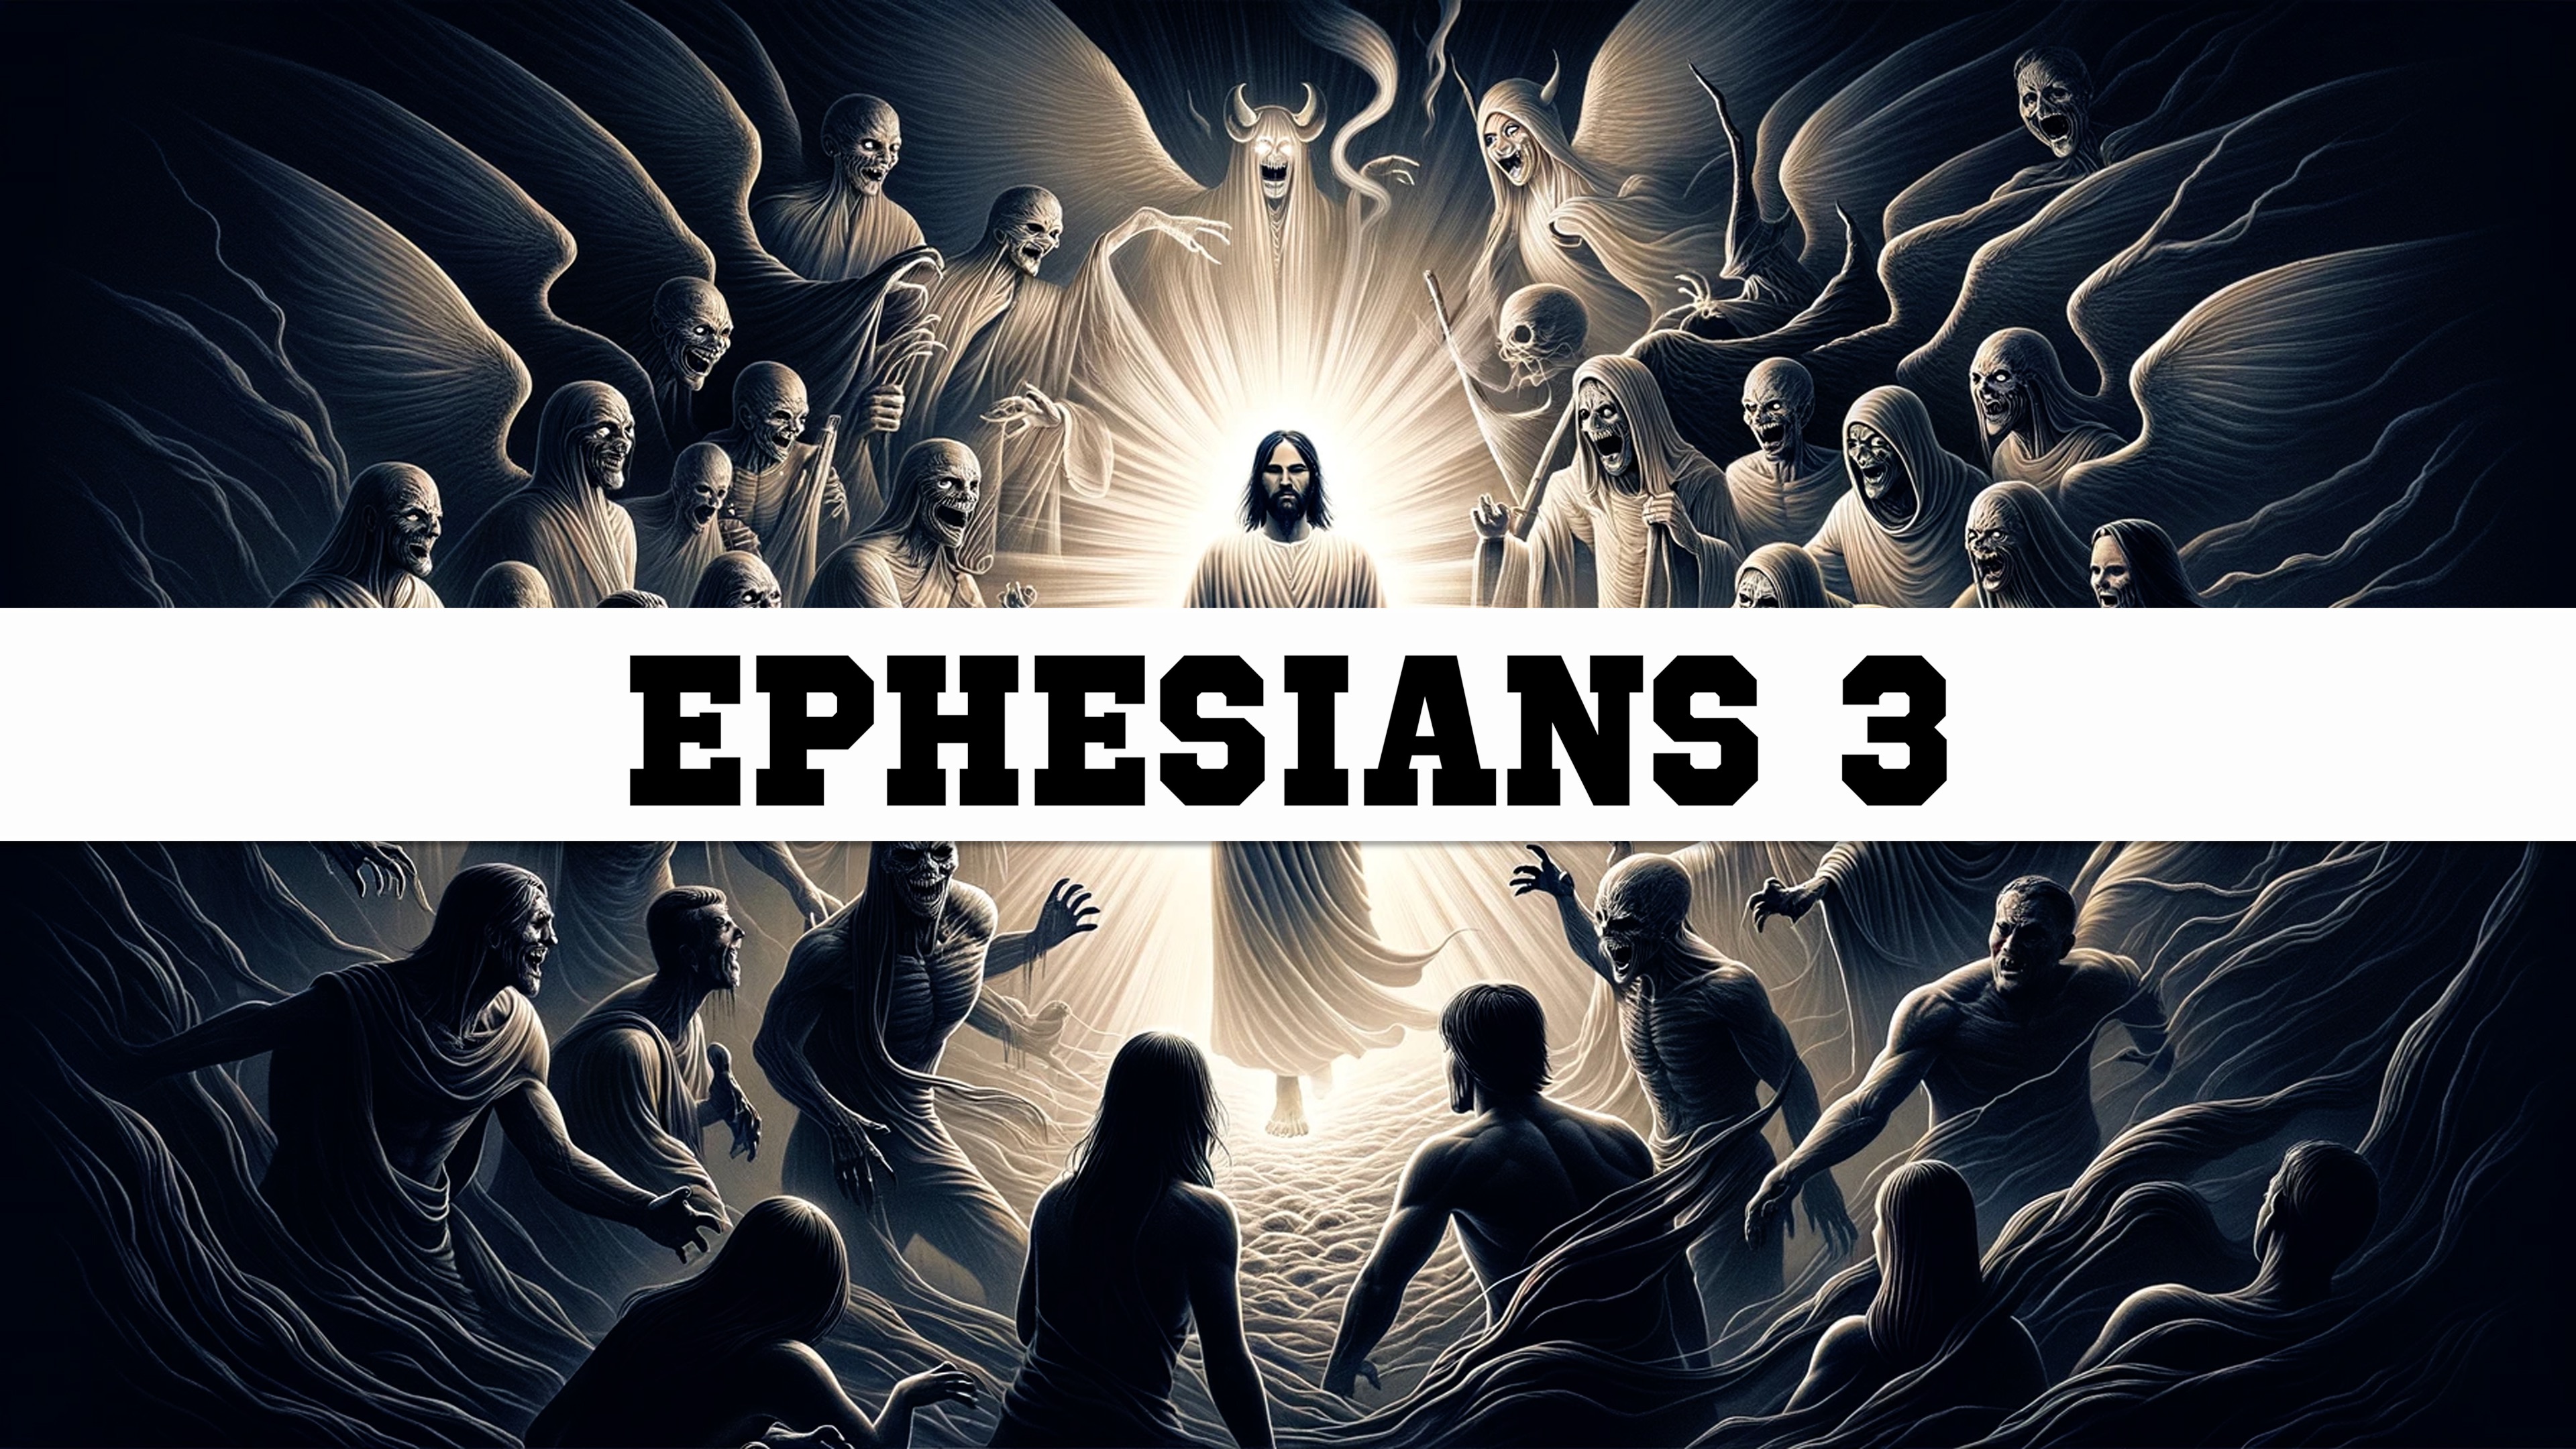 Ephesians 3 Summary – Purpose of Christ